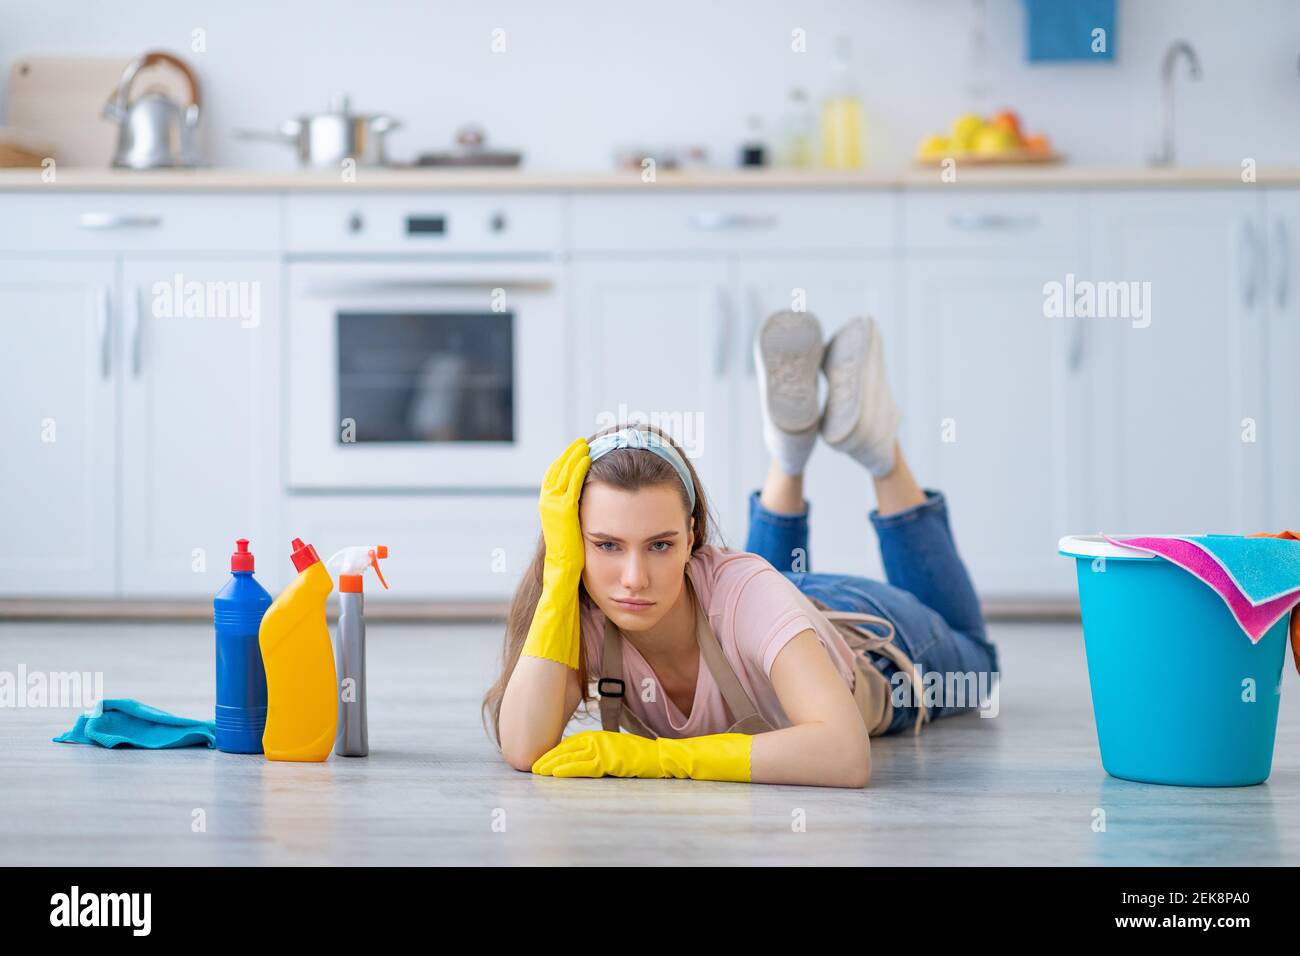 Une jeune femme fatiguée, couchée sur le sol parmi les fournitures de nettoyage, épuisée des travaux ménagers dans la cuisine, l'espace de copie Banque D'Images